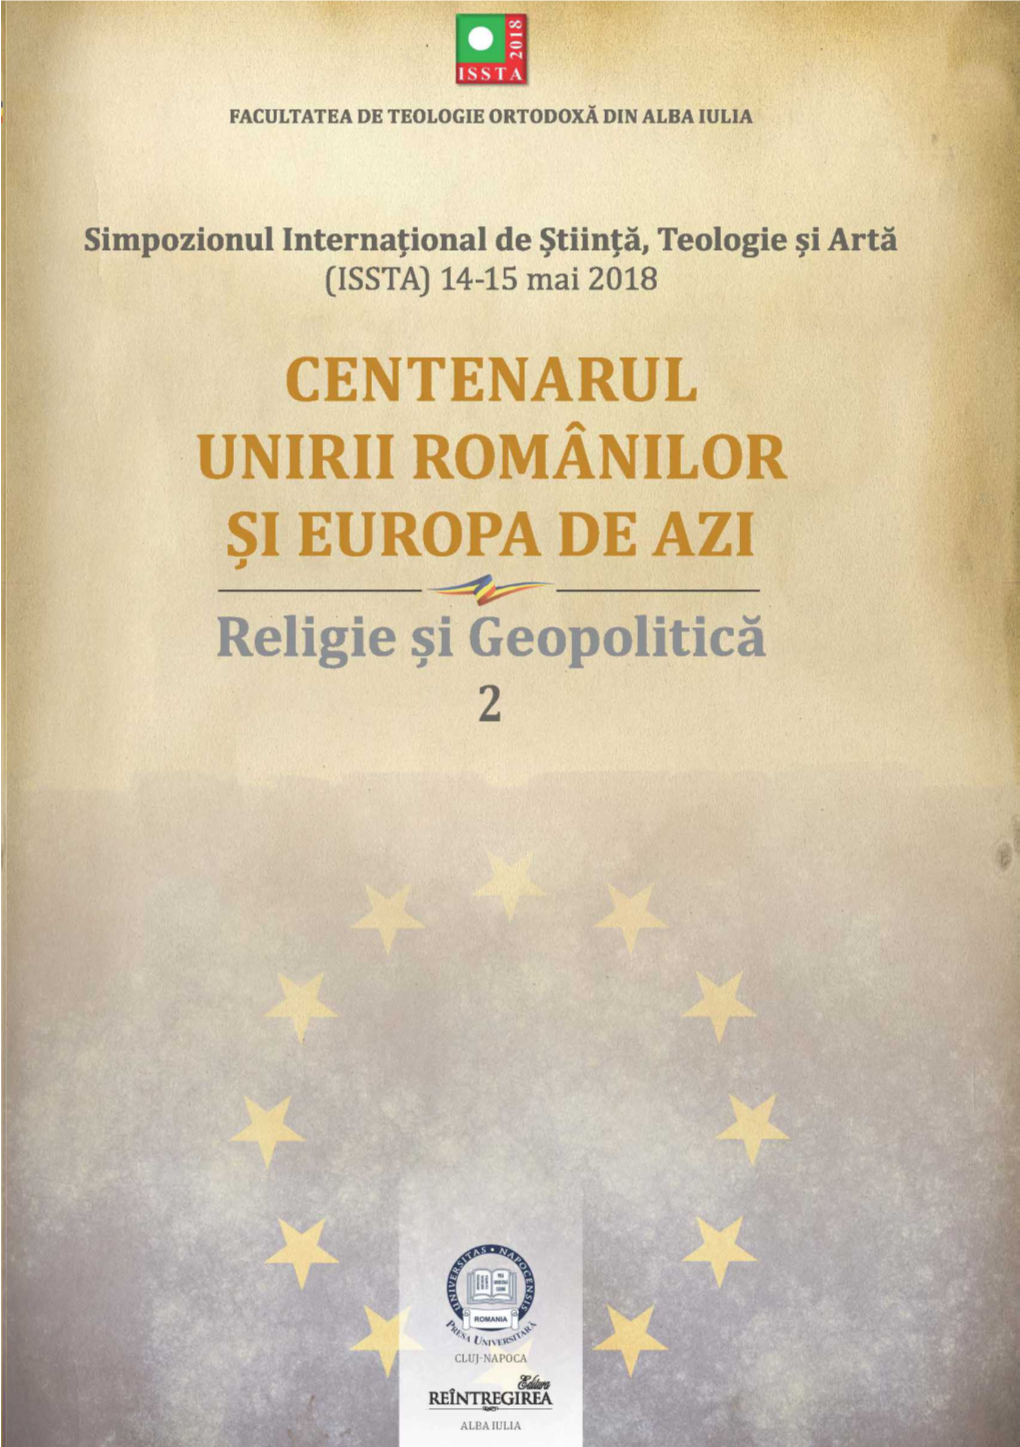 CENTENARUL UNIRII ROMÂNILOR ȘI EUROPA DE AZI Religie Și Geopolitică